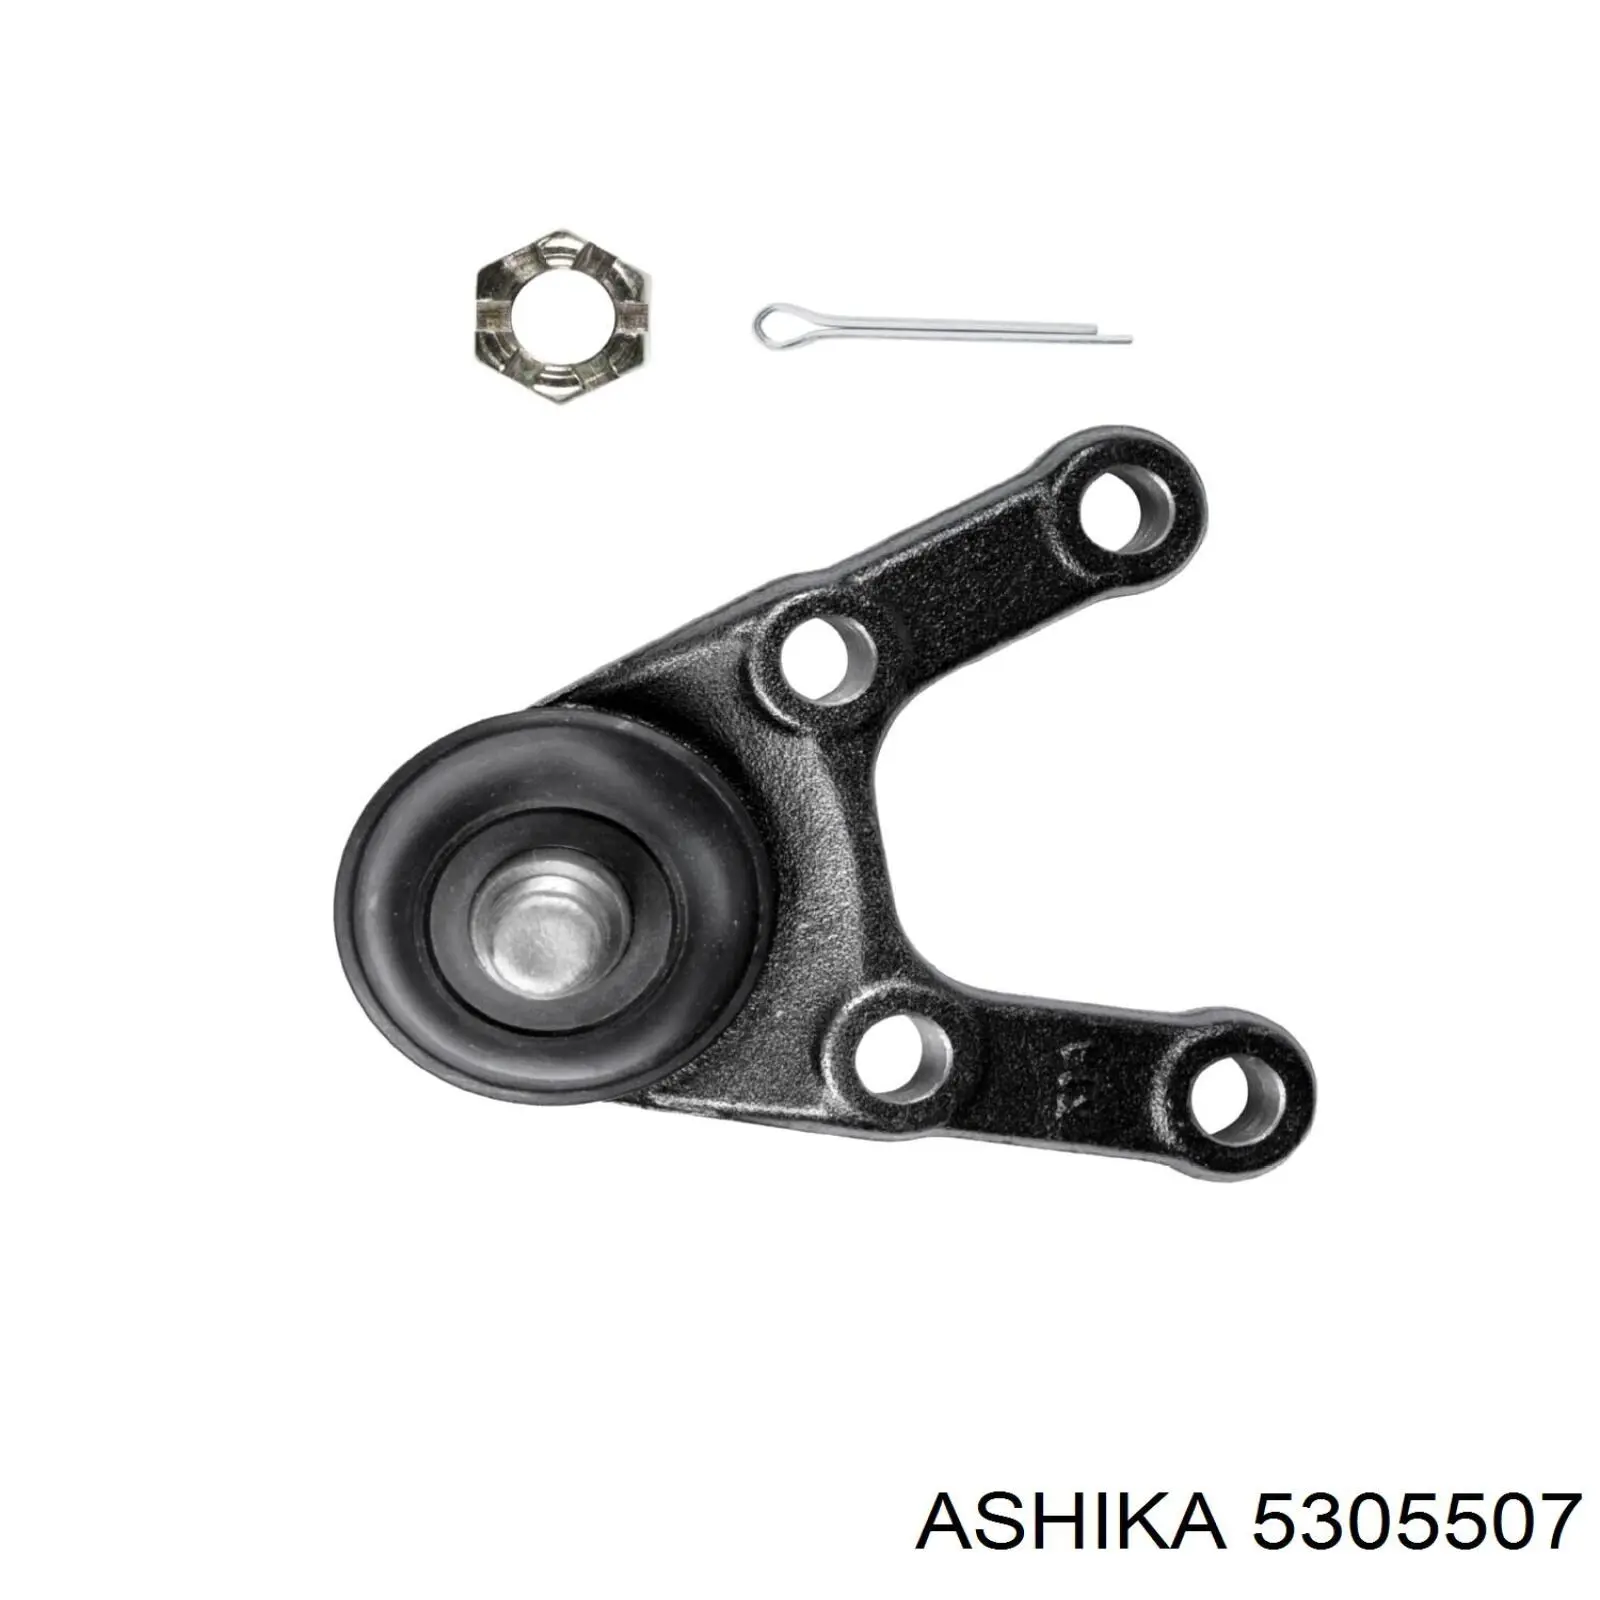 53-05-507 Ashika rótula de suspensión inferior